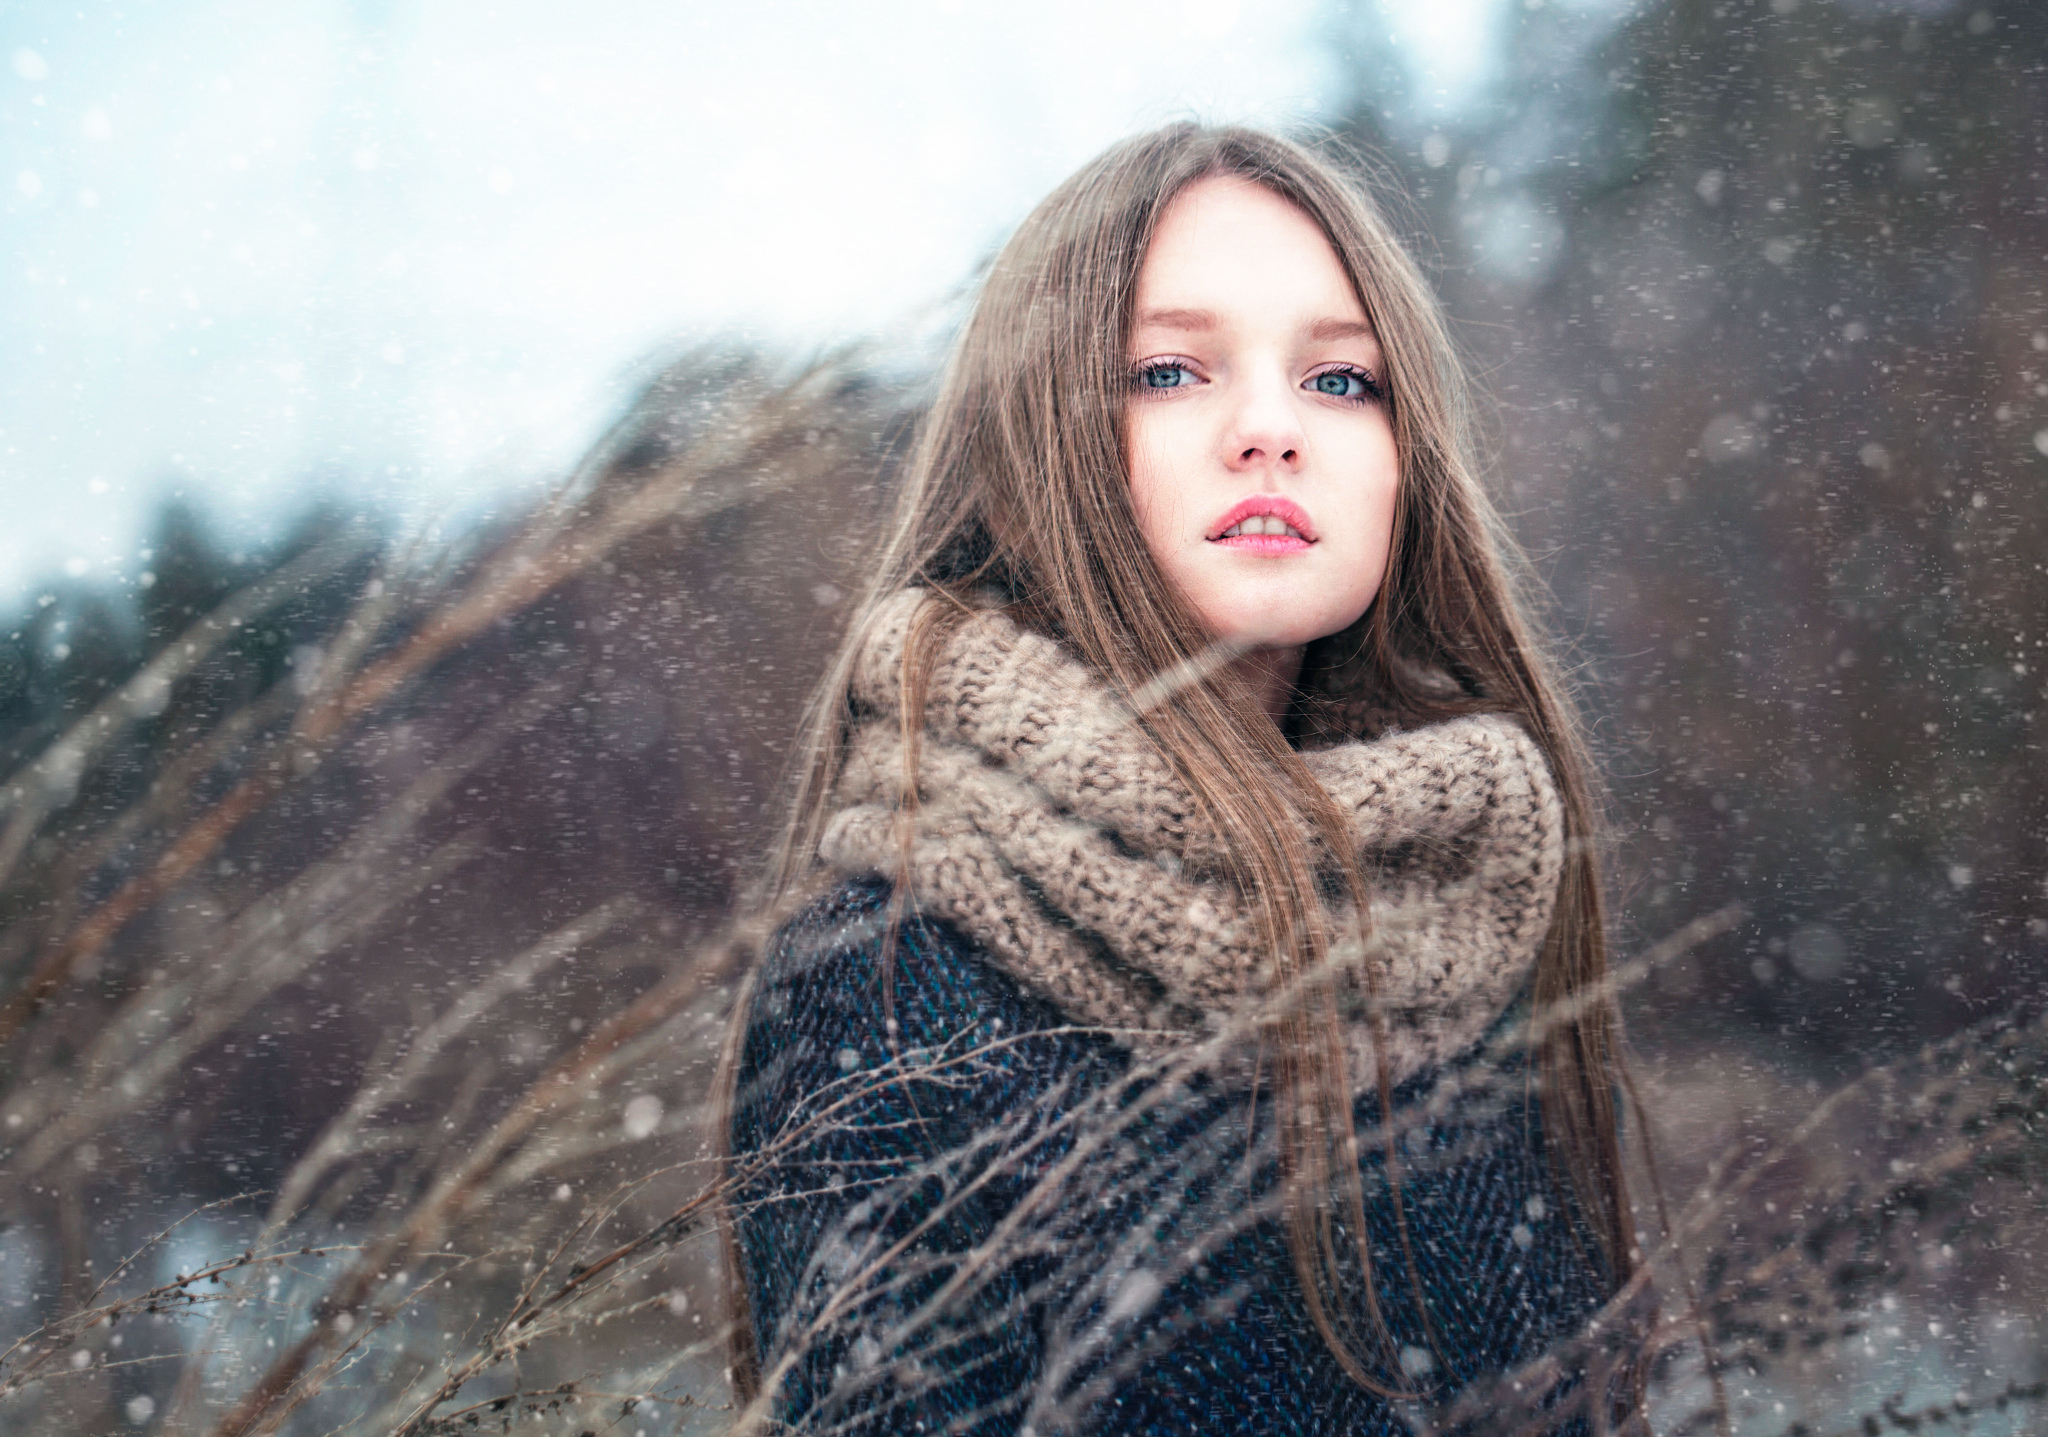 Фото девочка шатенки Зима молодые женщины снеге Девочки Шатенка зимние девушка Девушки молодая женщина Снег снега снегу